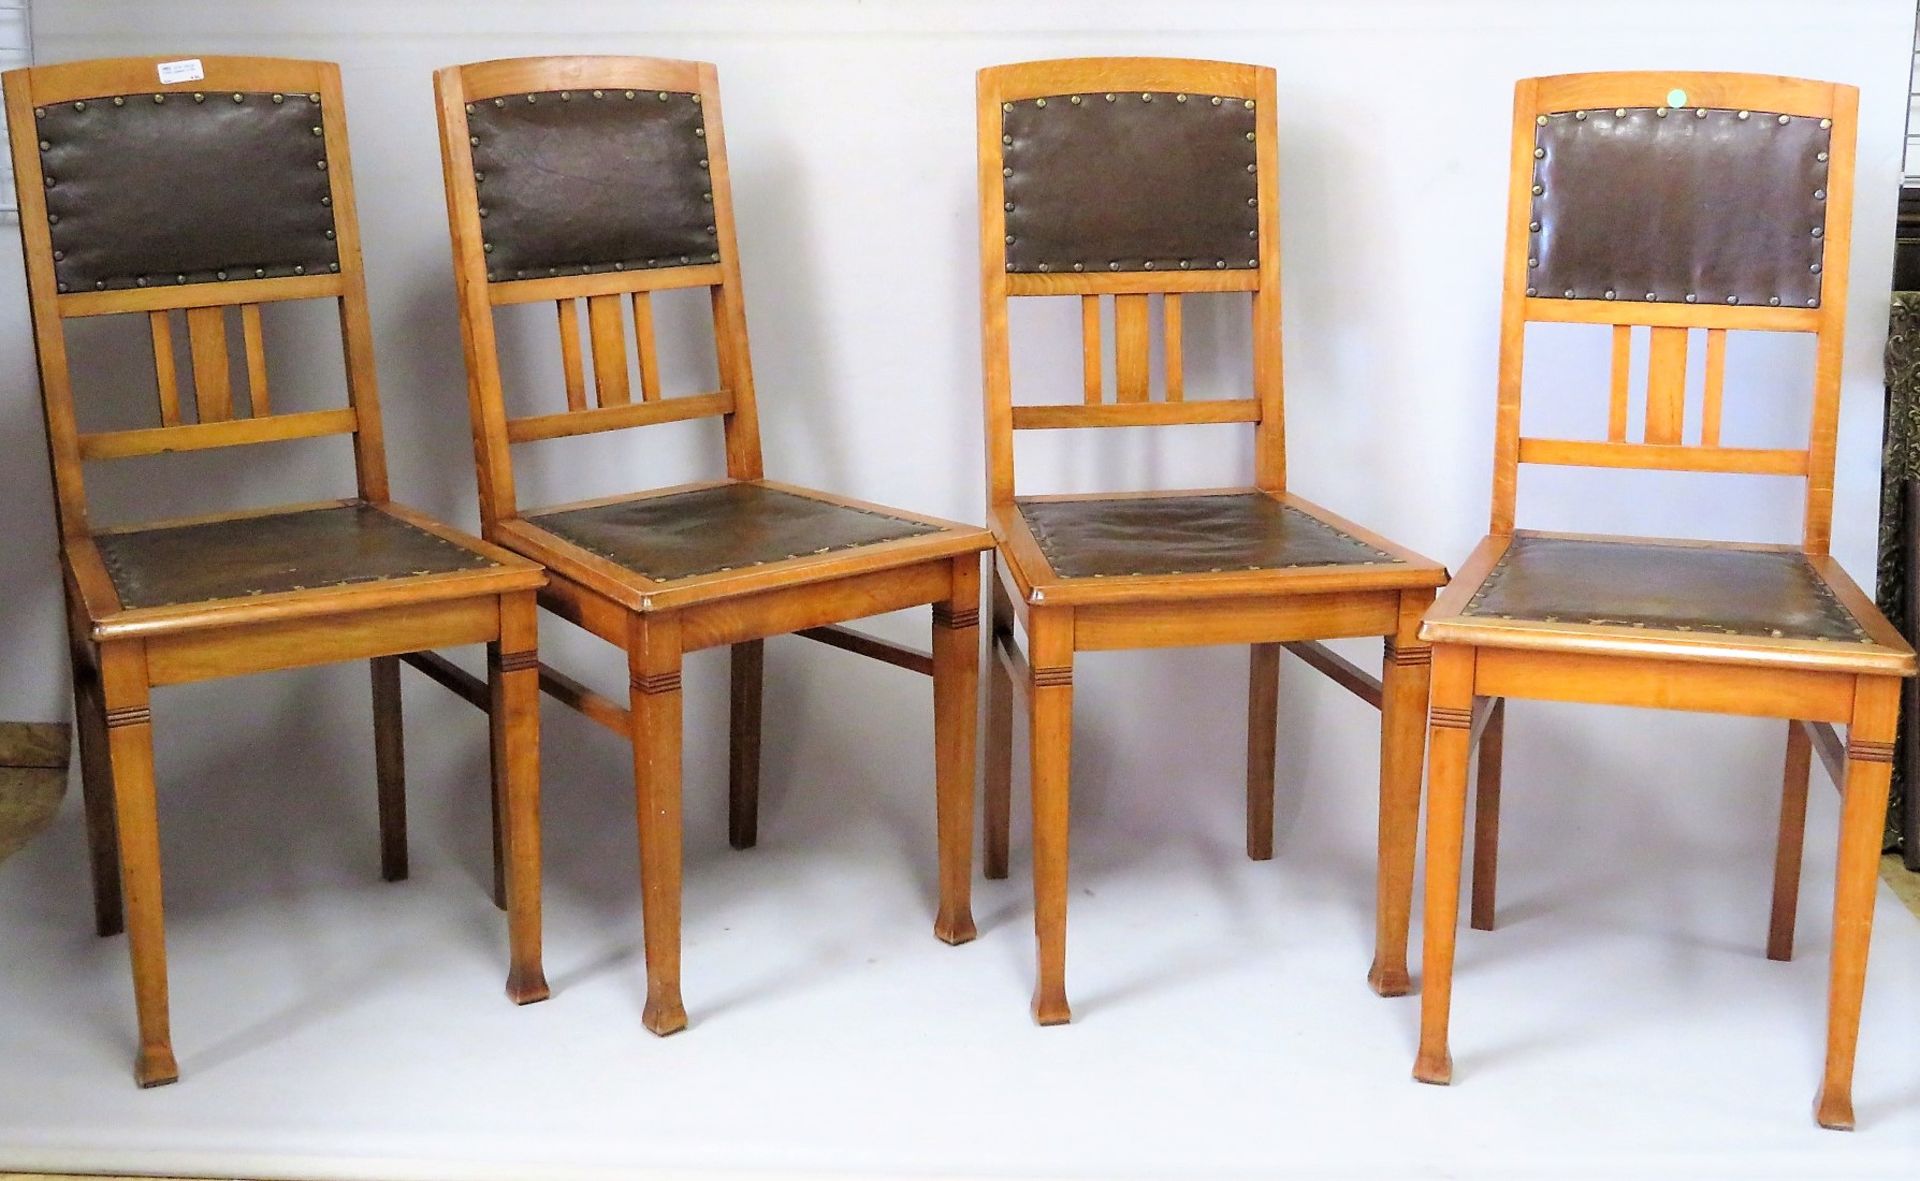 4 Stühle, Jugendstil, um 1900, Buche, 97 x 45 x 50 cm.